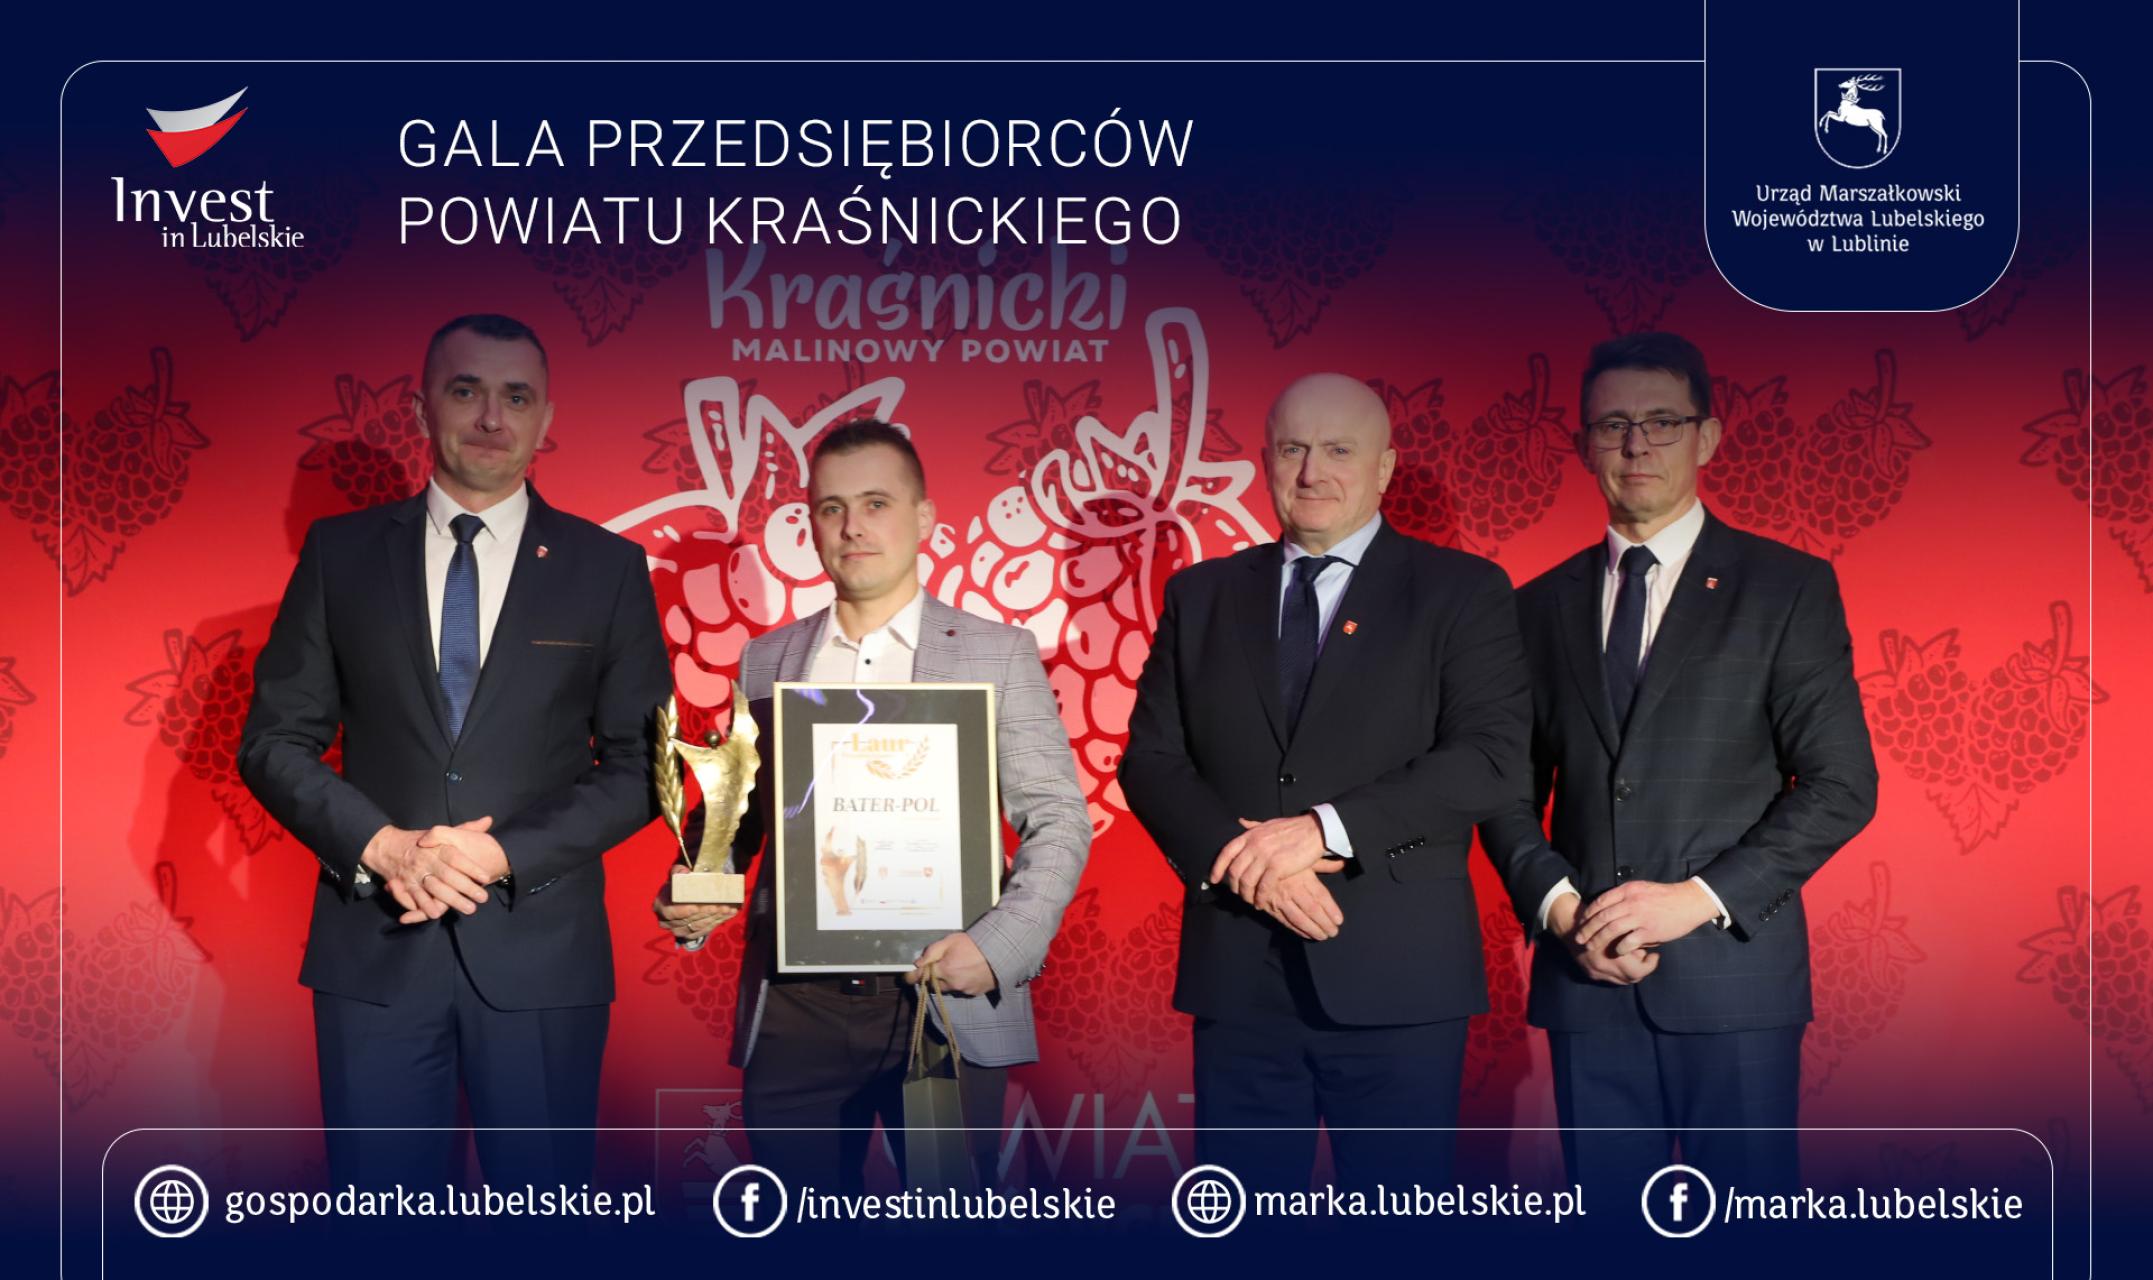 Gala Przedsiębiorców Powiatu Kraśnickiego 